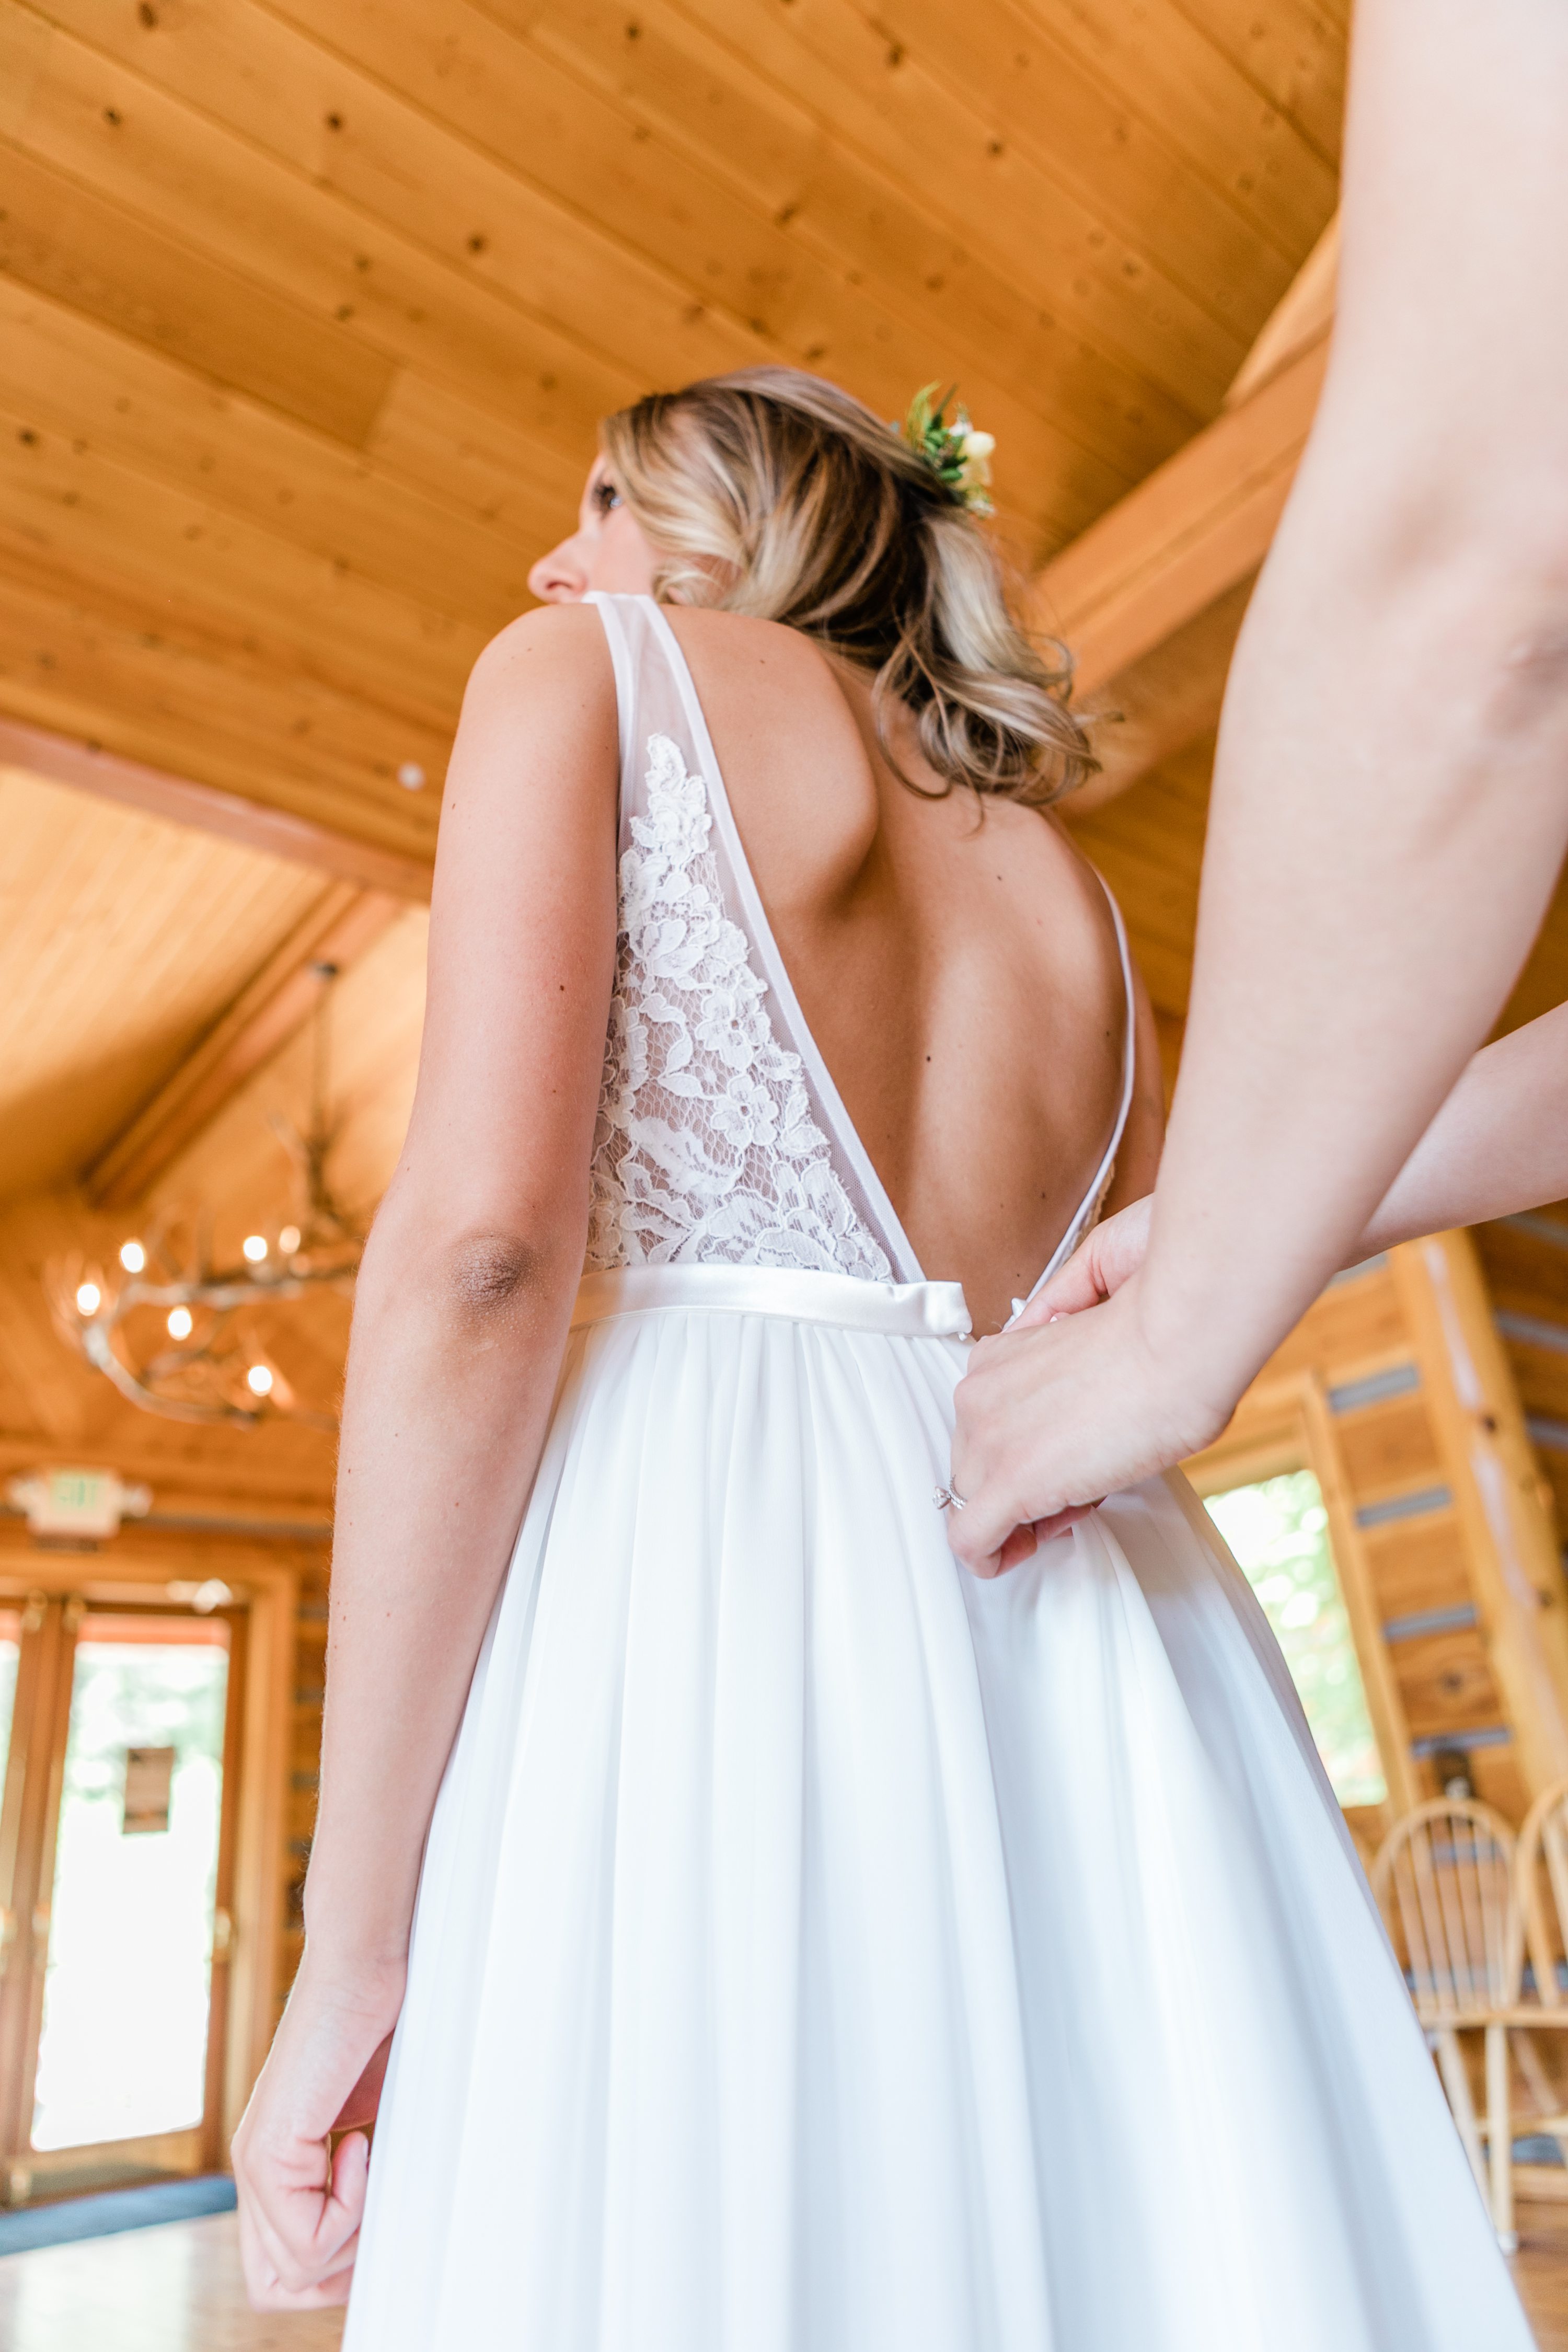 sun valley wedding,boise wedding florist,wedding gown details,bride